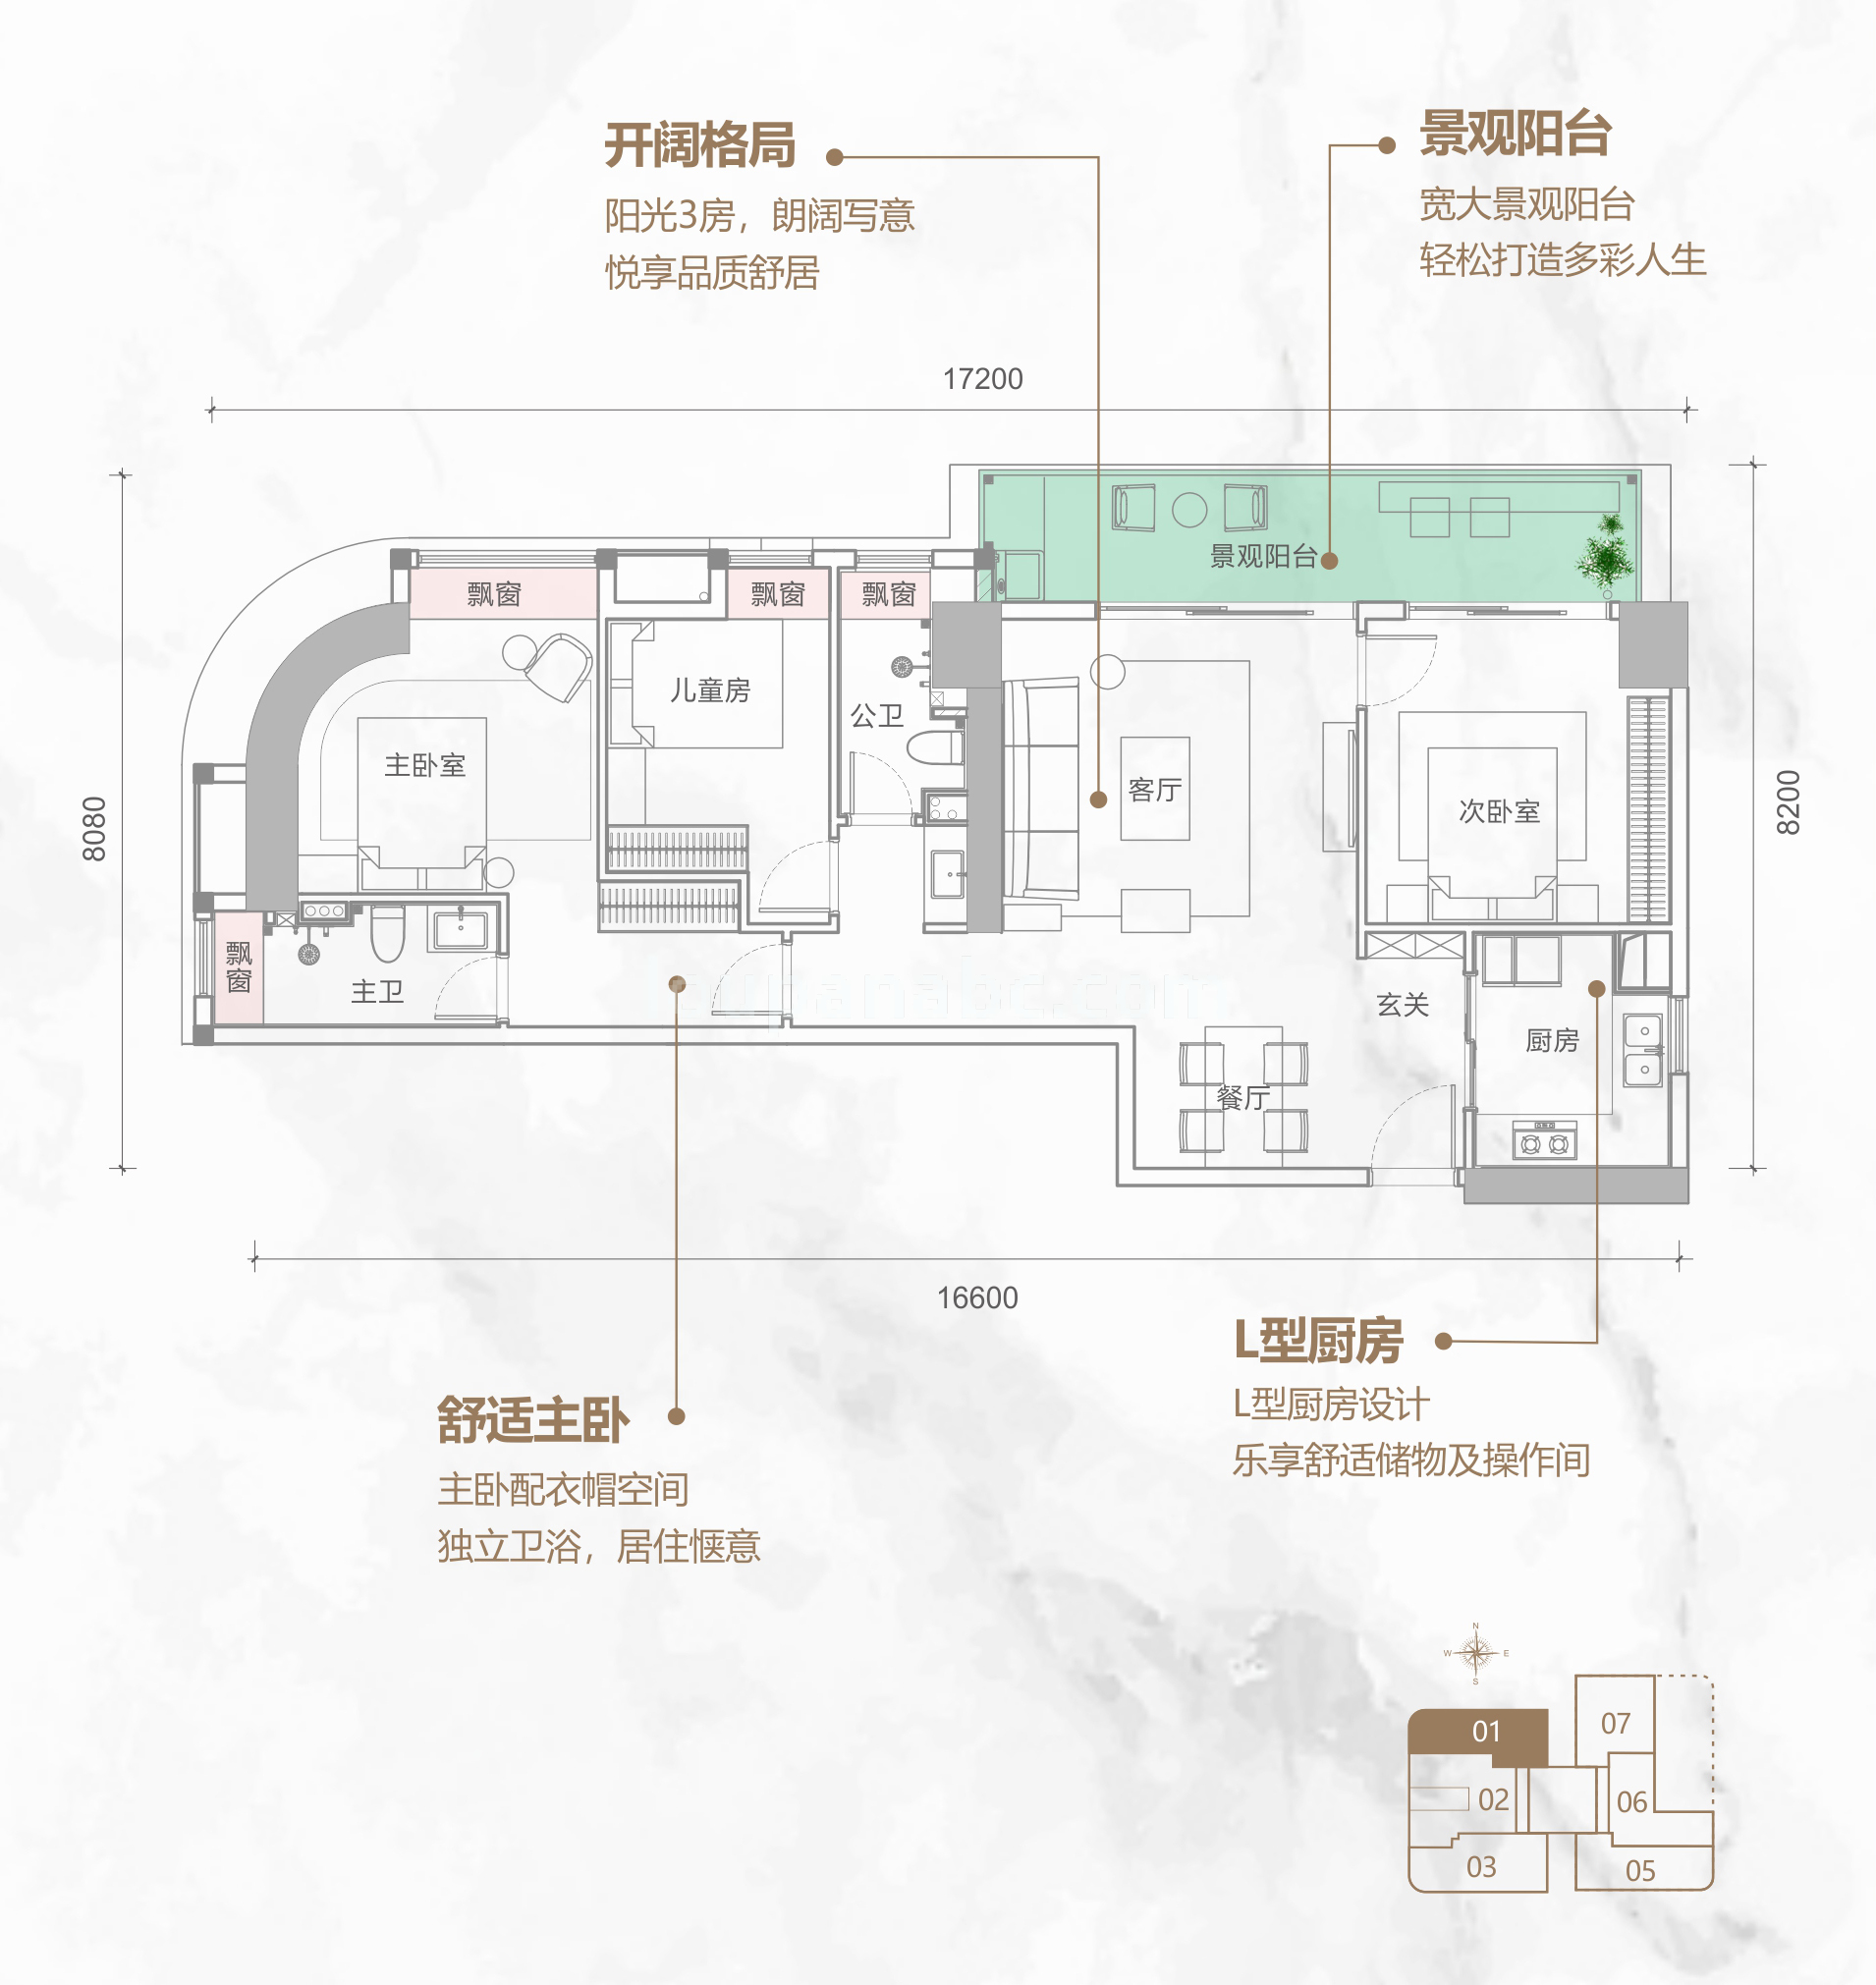 同康江语海 高层 A-01户型 3房2厅2卫 建筑面积120㎡ 